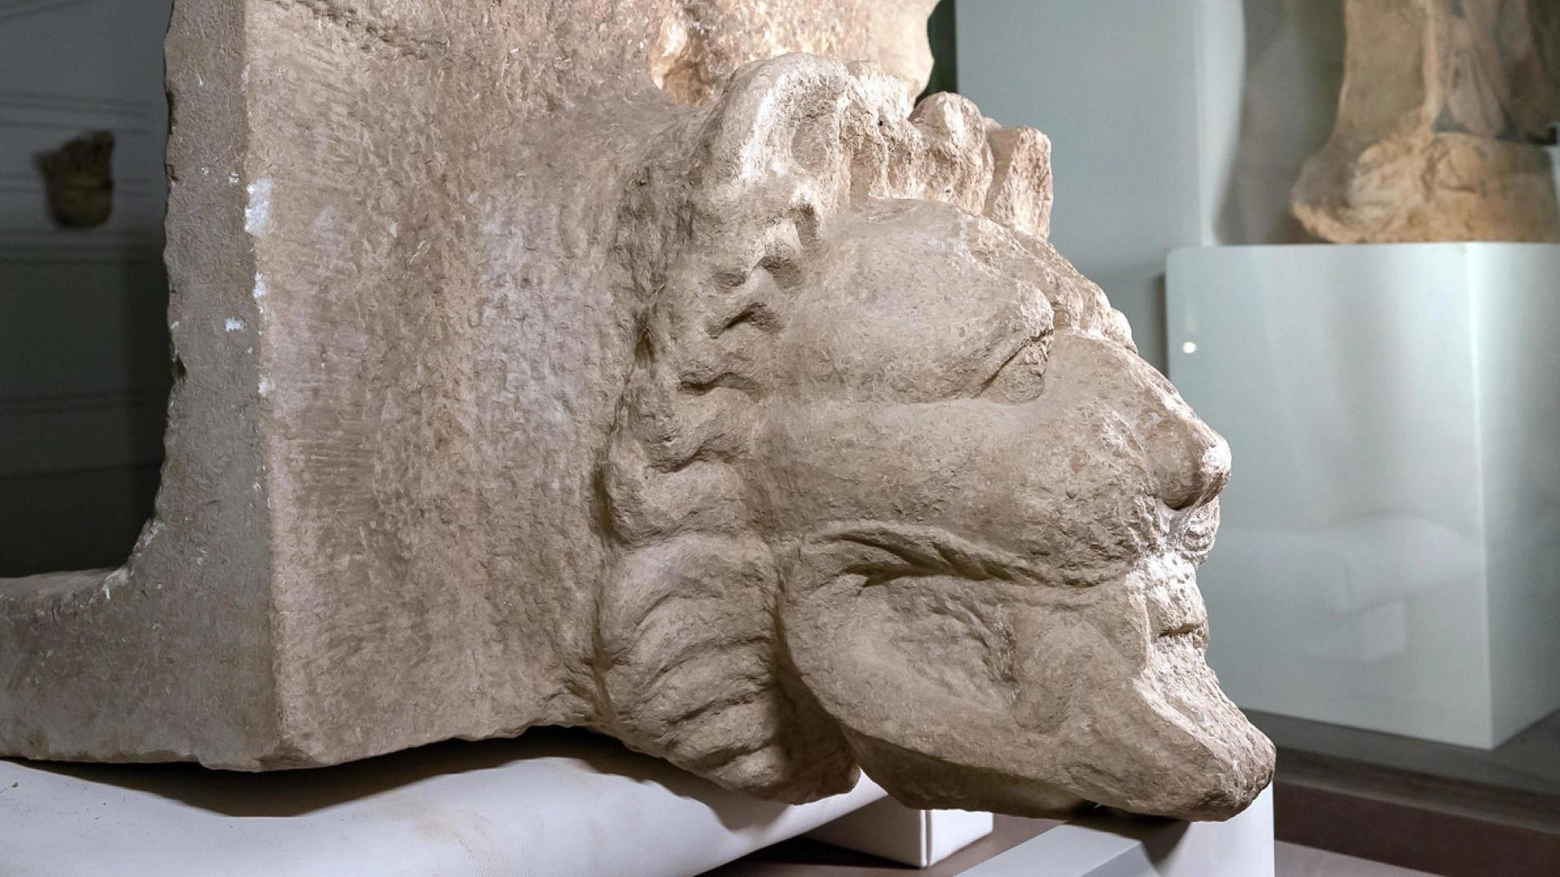 Scoperta a Selinunte  una rara testa di leone  in marmo greco